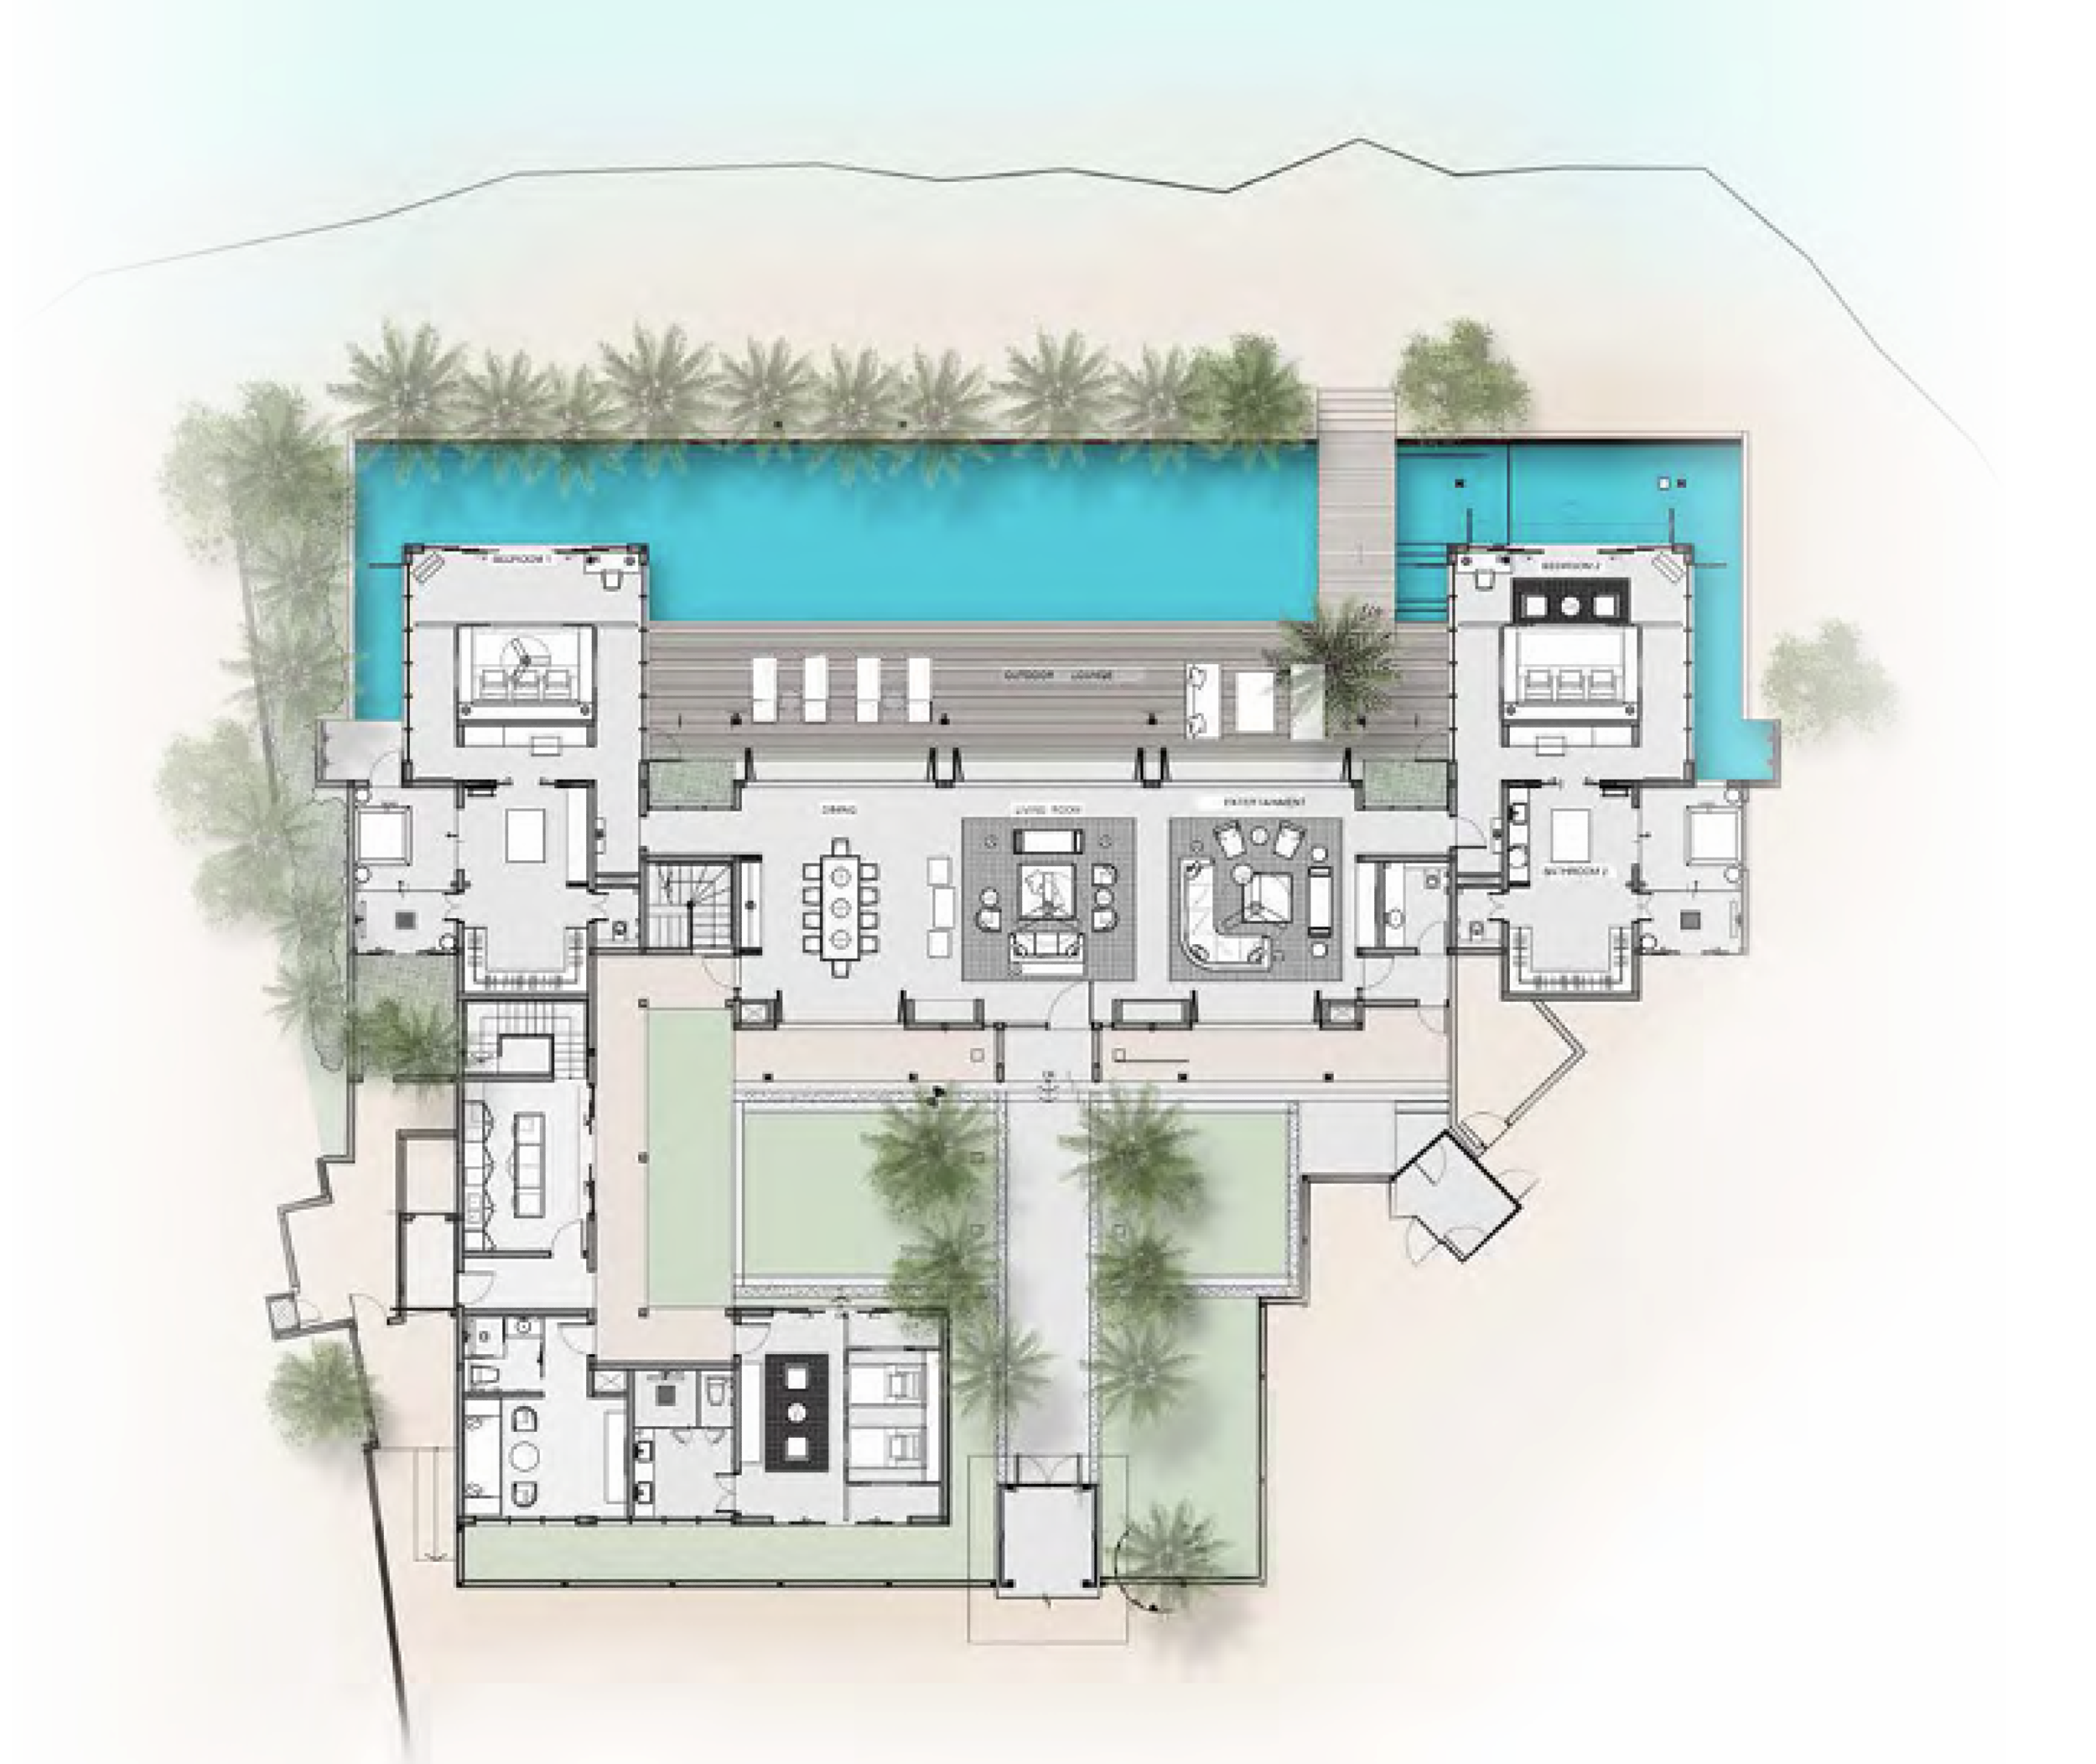 Raffles Royal Residence with Pool (4bedroom) floor plan - Raffles Maldives Meradhoo